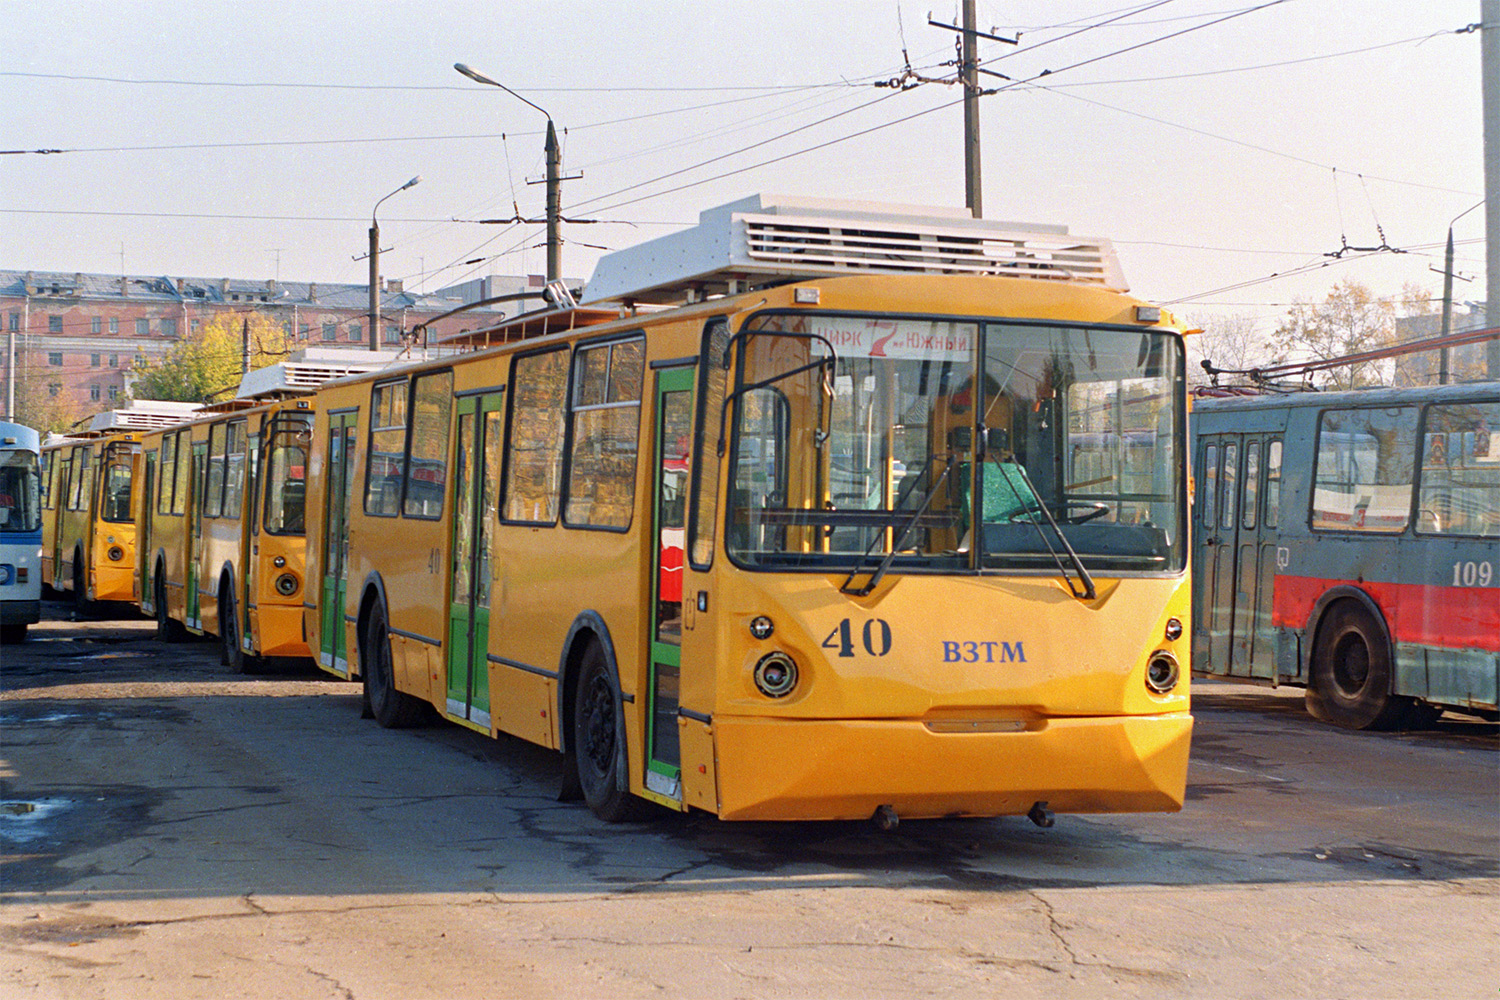 Тверь, ВЗТМ-5284 № 40; Тверь — Тверской троллейбус в начале 2000-х гг. (2002 — 2006 гг.)